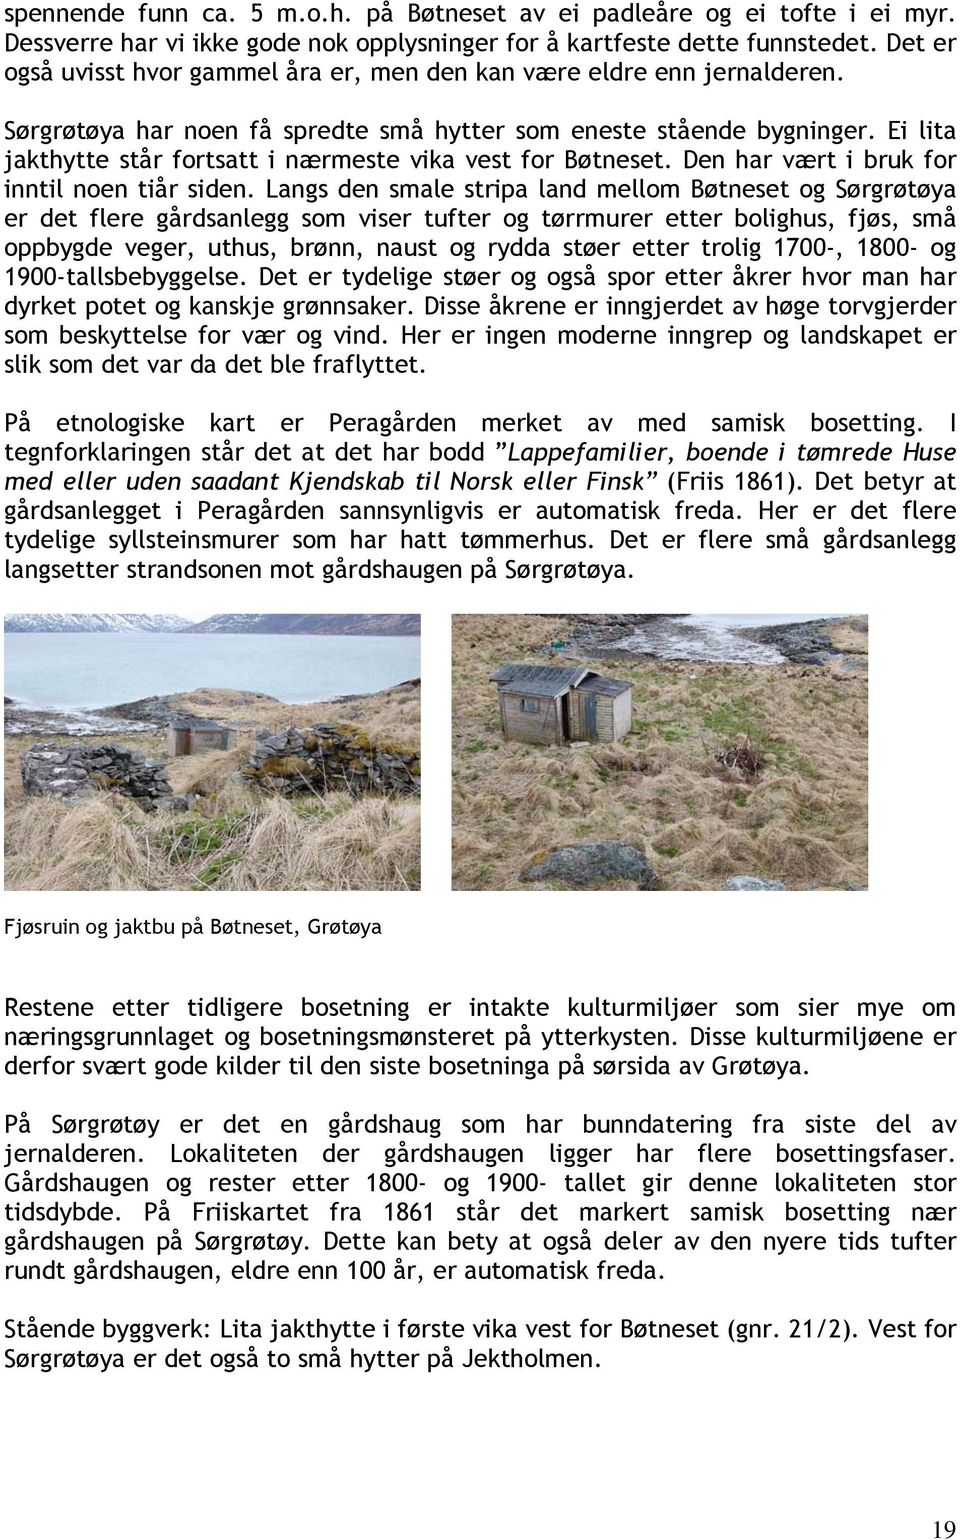 Ei lita jakthytte står fortsatt i nærmeste vika vest for Bøtneset. Den har vært i bruk for inntil noen tiår siden.